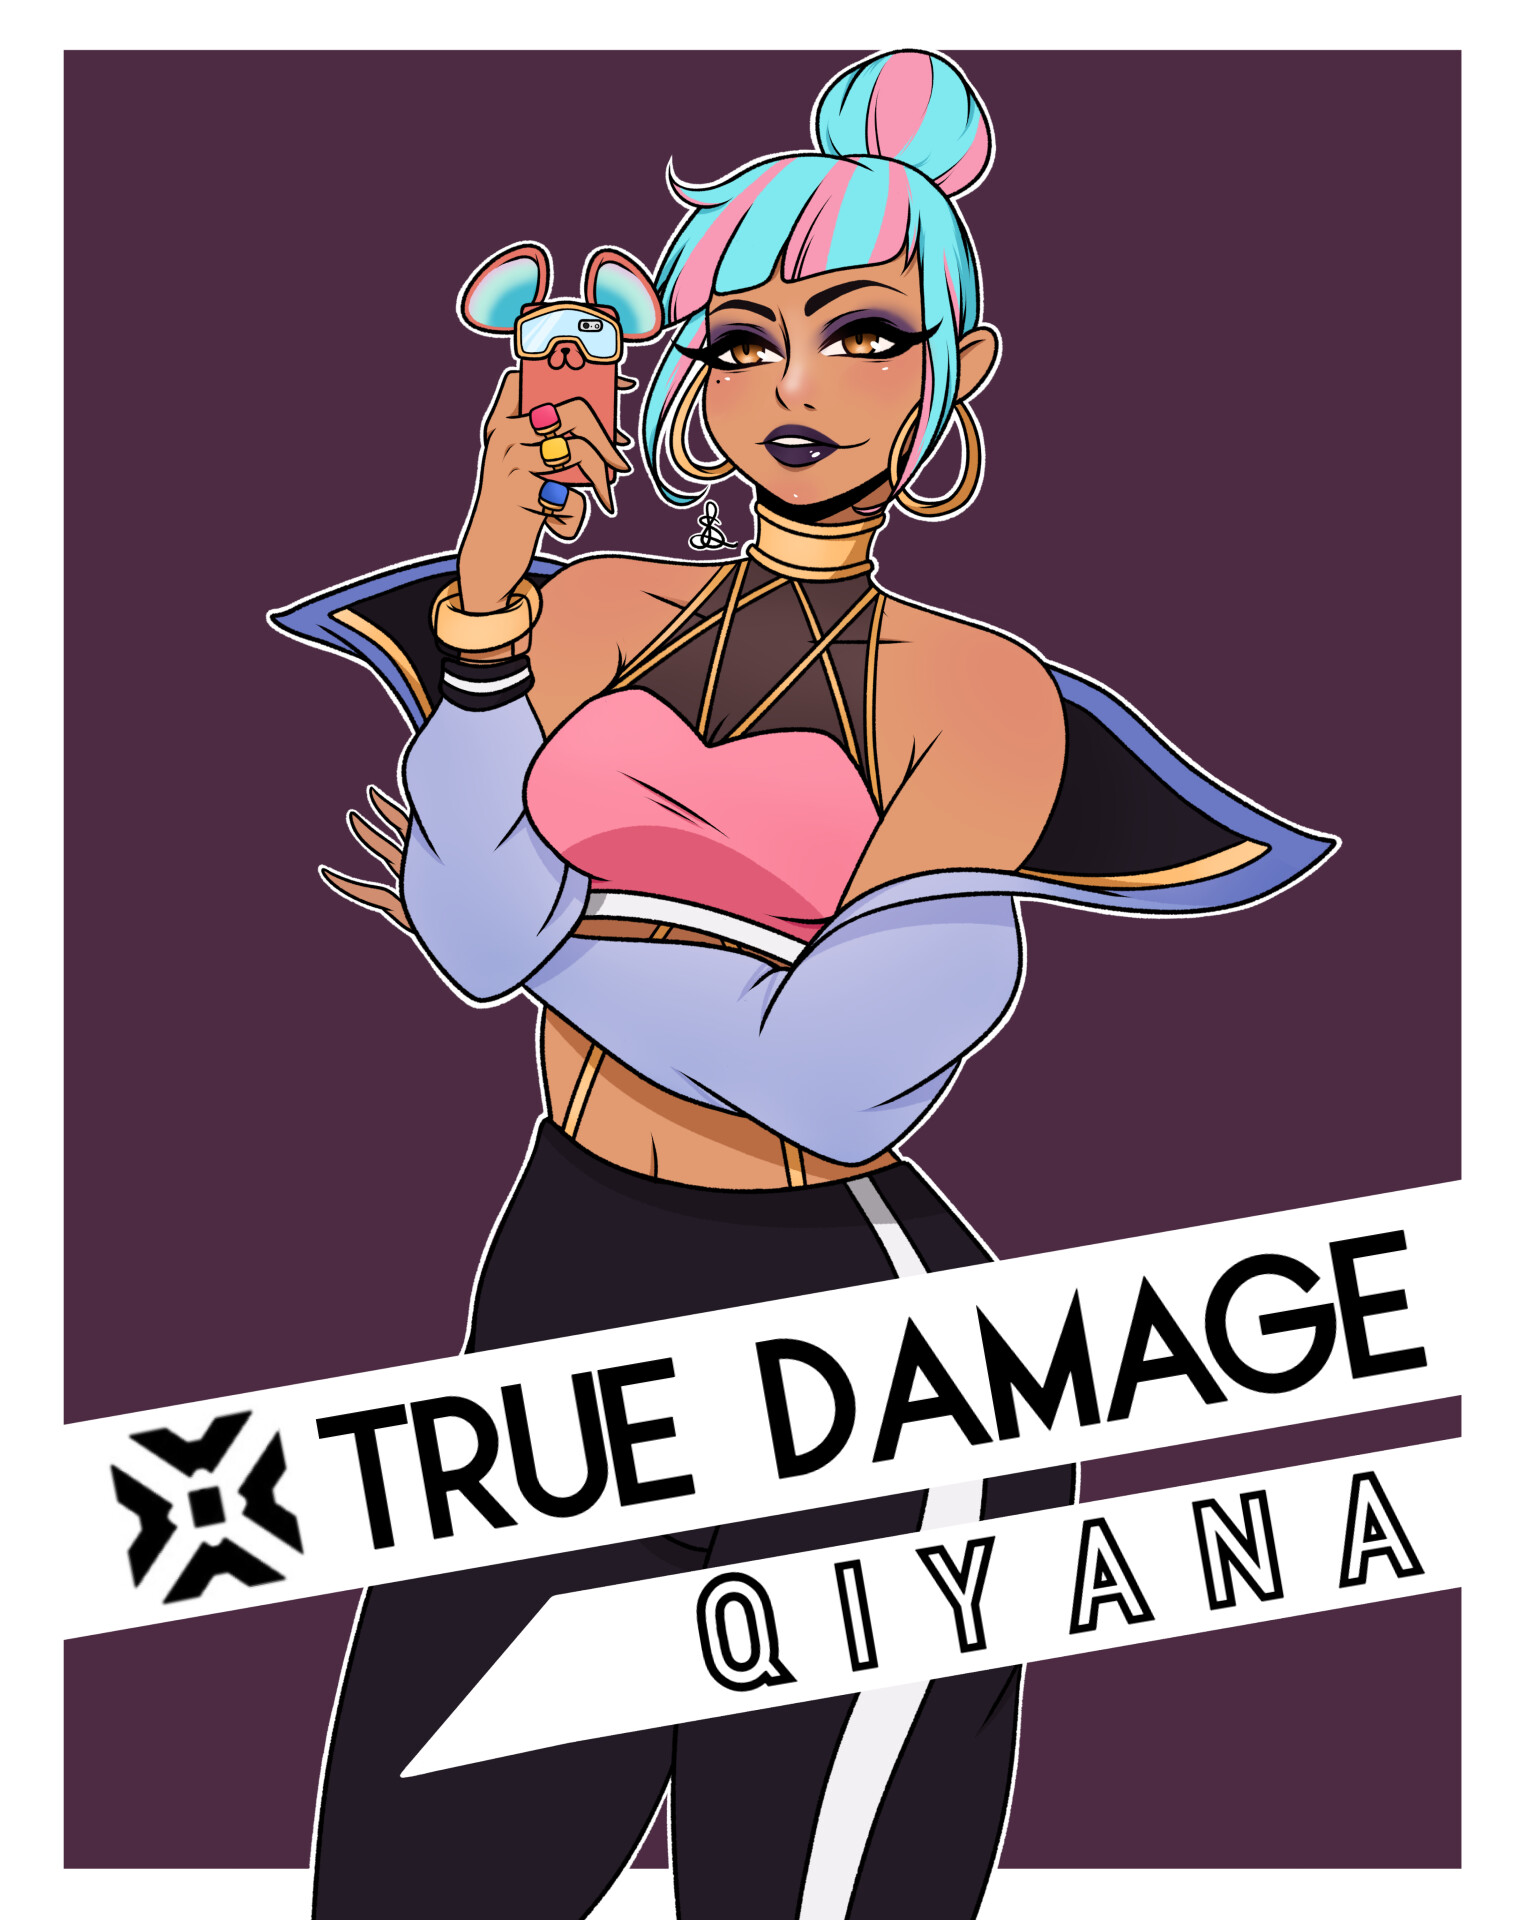 True damage qiyana